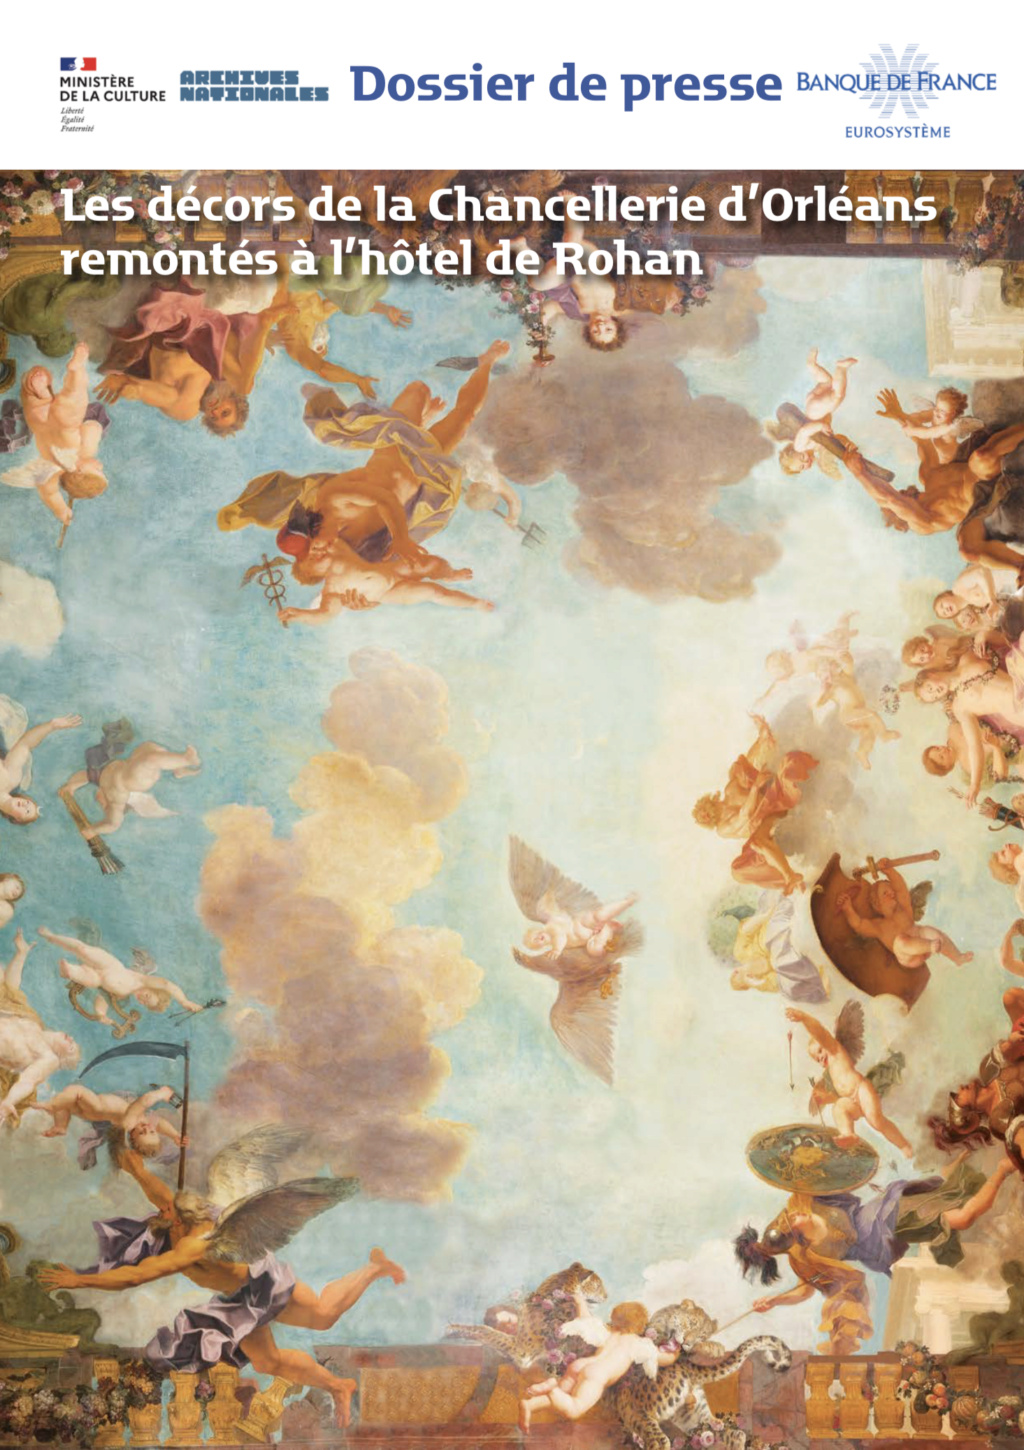 Rohan - L'hôtel de Rohan (Paris), et les décors de la Chancellerie d’Orléans - Page 2 Capt3938